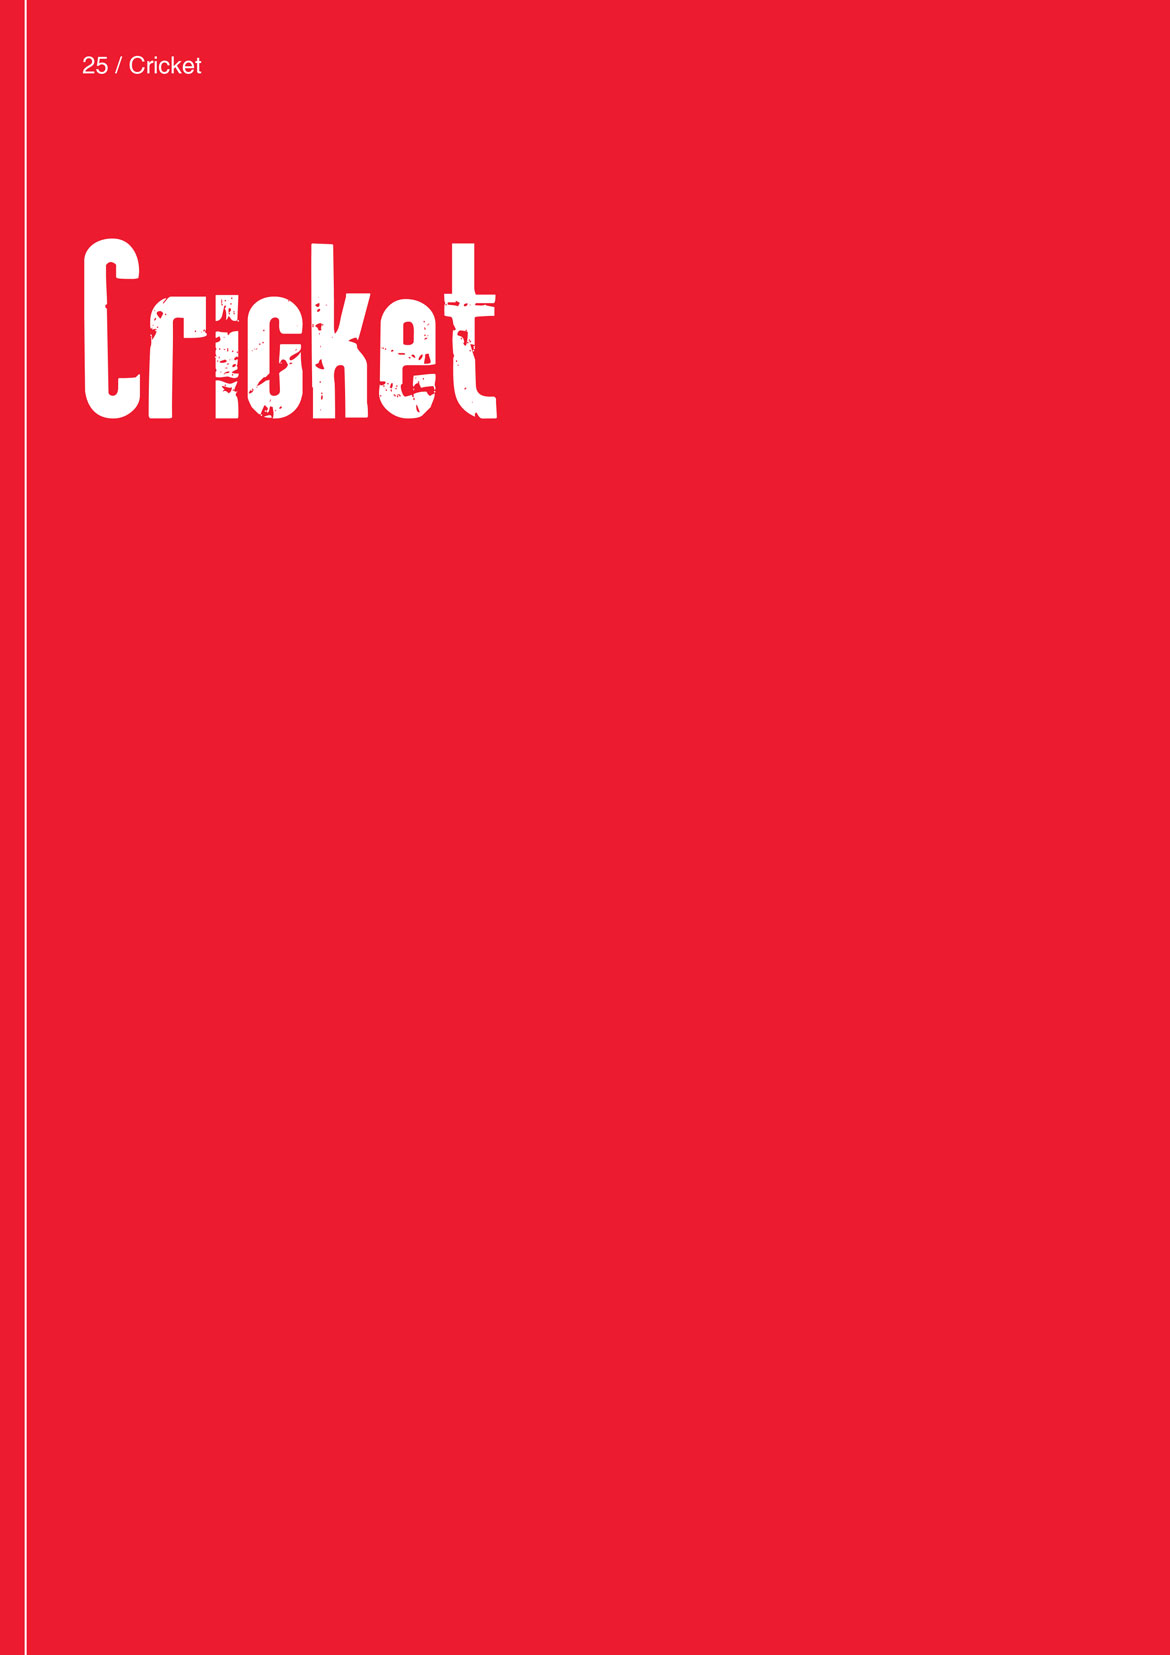 Cricket Apparel